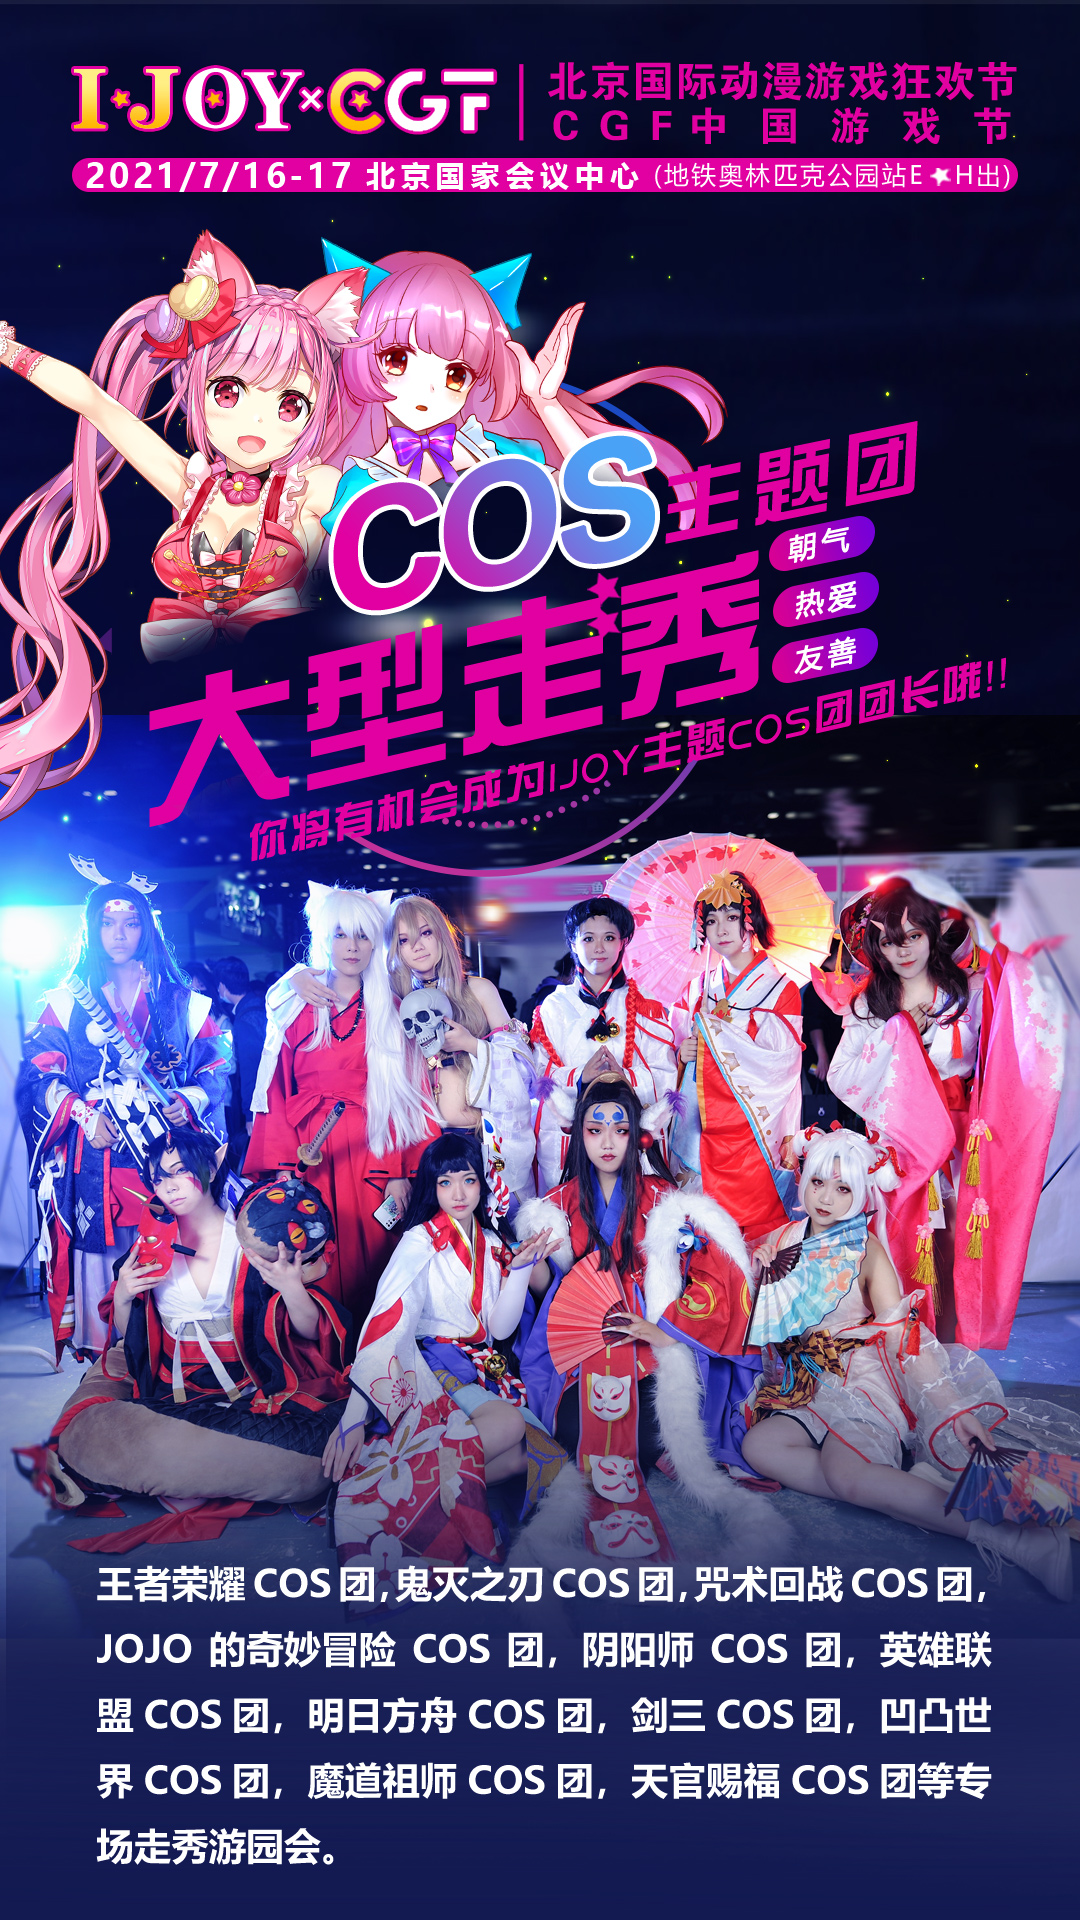 2021北京暑假嗨玩第四届IJOYxCGF北京大型二次元狂欢节